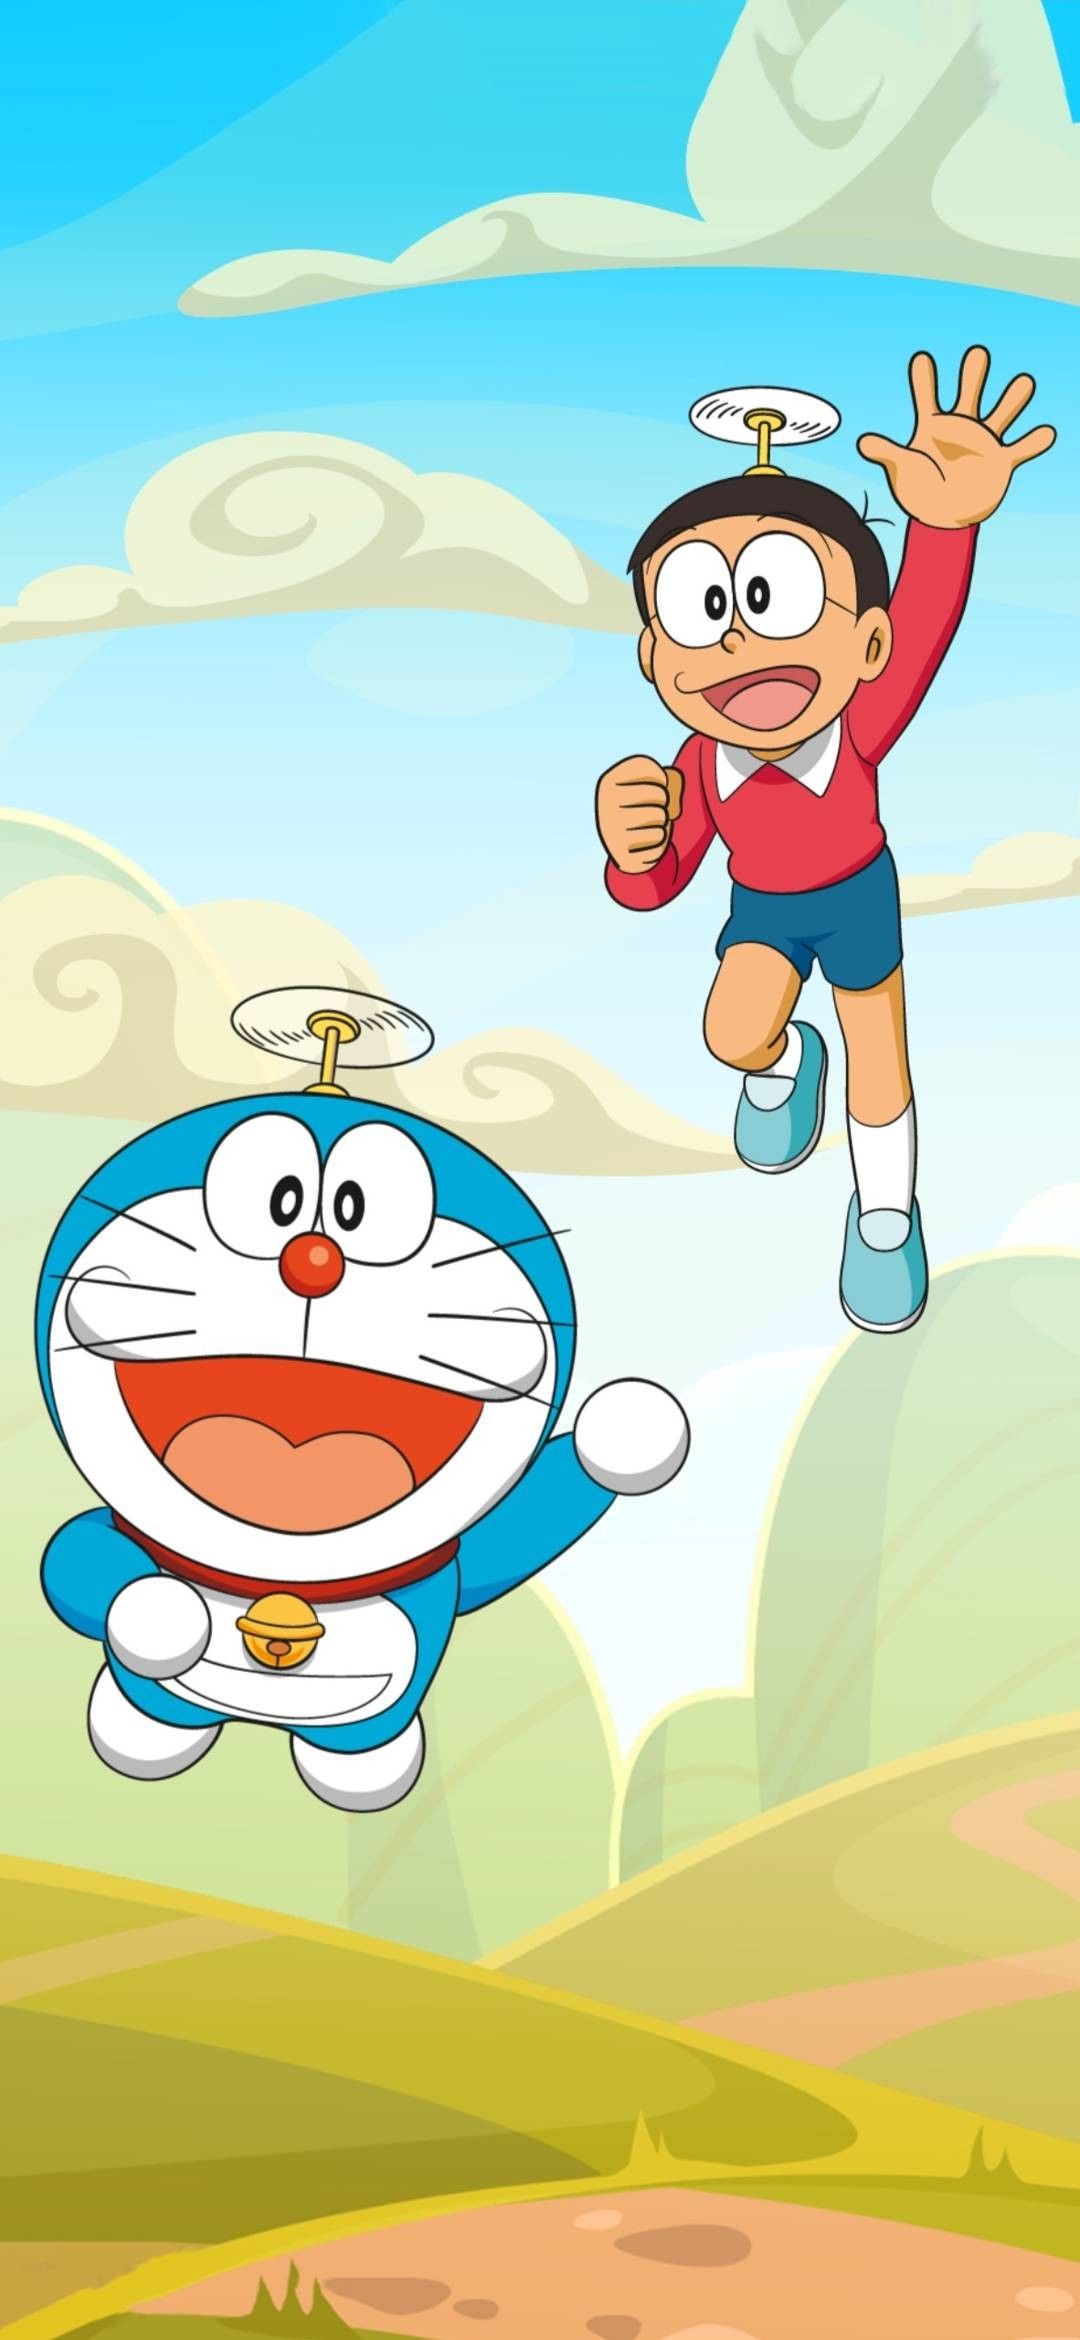 Nobita: Nobita là một cậu bé mộng mơ, phiêu lưu và có trái tim tốt bụng. Hình ảnh của Nobita sẽ đưa bạn đến với thế giới kỳ ảo của Doraemon, nơi mà Nobita đã trải qua những cuộc phiêu lưu đầy thú vị. Hãy cùng xem hình ảnh của Nobita để khám phá thêm nhiều bí mật trong câu chuyện đầy phép màu của Doraemon.